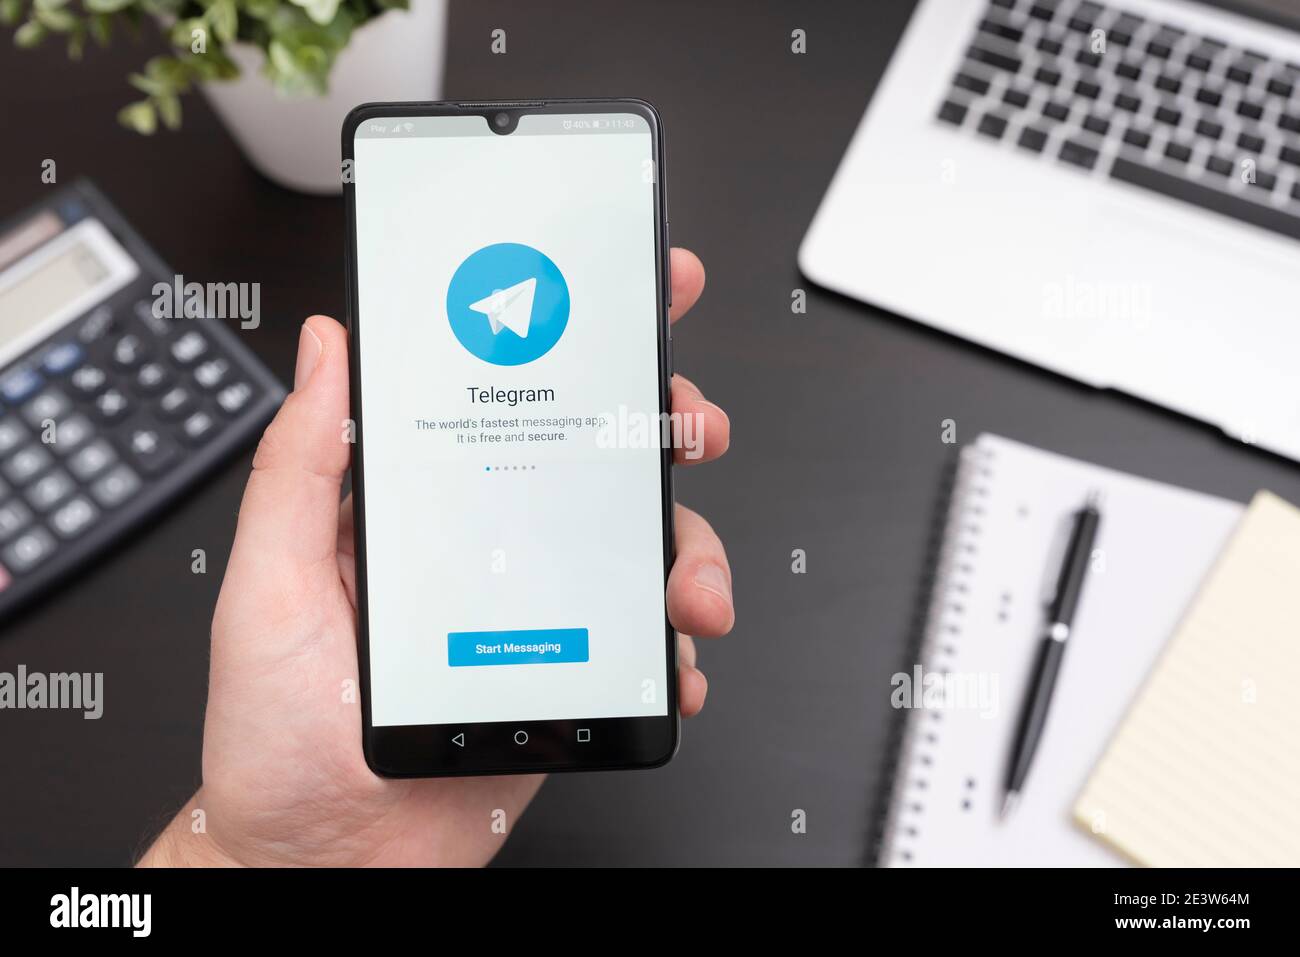 Wroclaw, Polonia - 20 GENNAIO 2021: Applicazione telegramma su smartphone con Android. Applicazione telegramma scelta dagli utenti per l'informativa sulla privacy Foto Stock